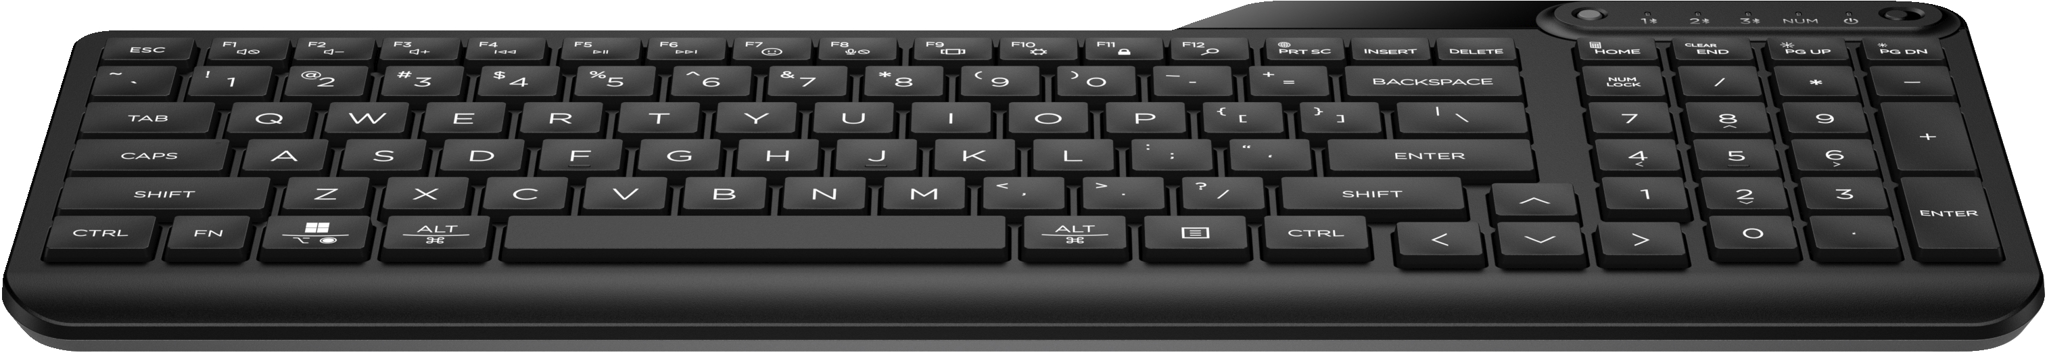 Bild von HP 460 Bluetooth-Tastatur für mehrere Geräte, Bluetooth